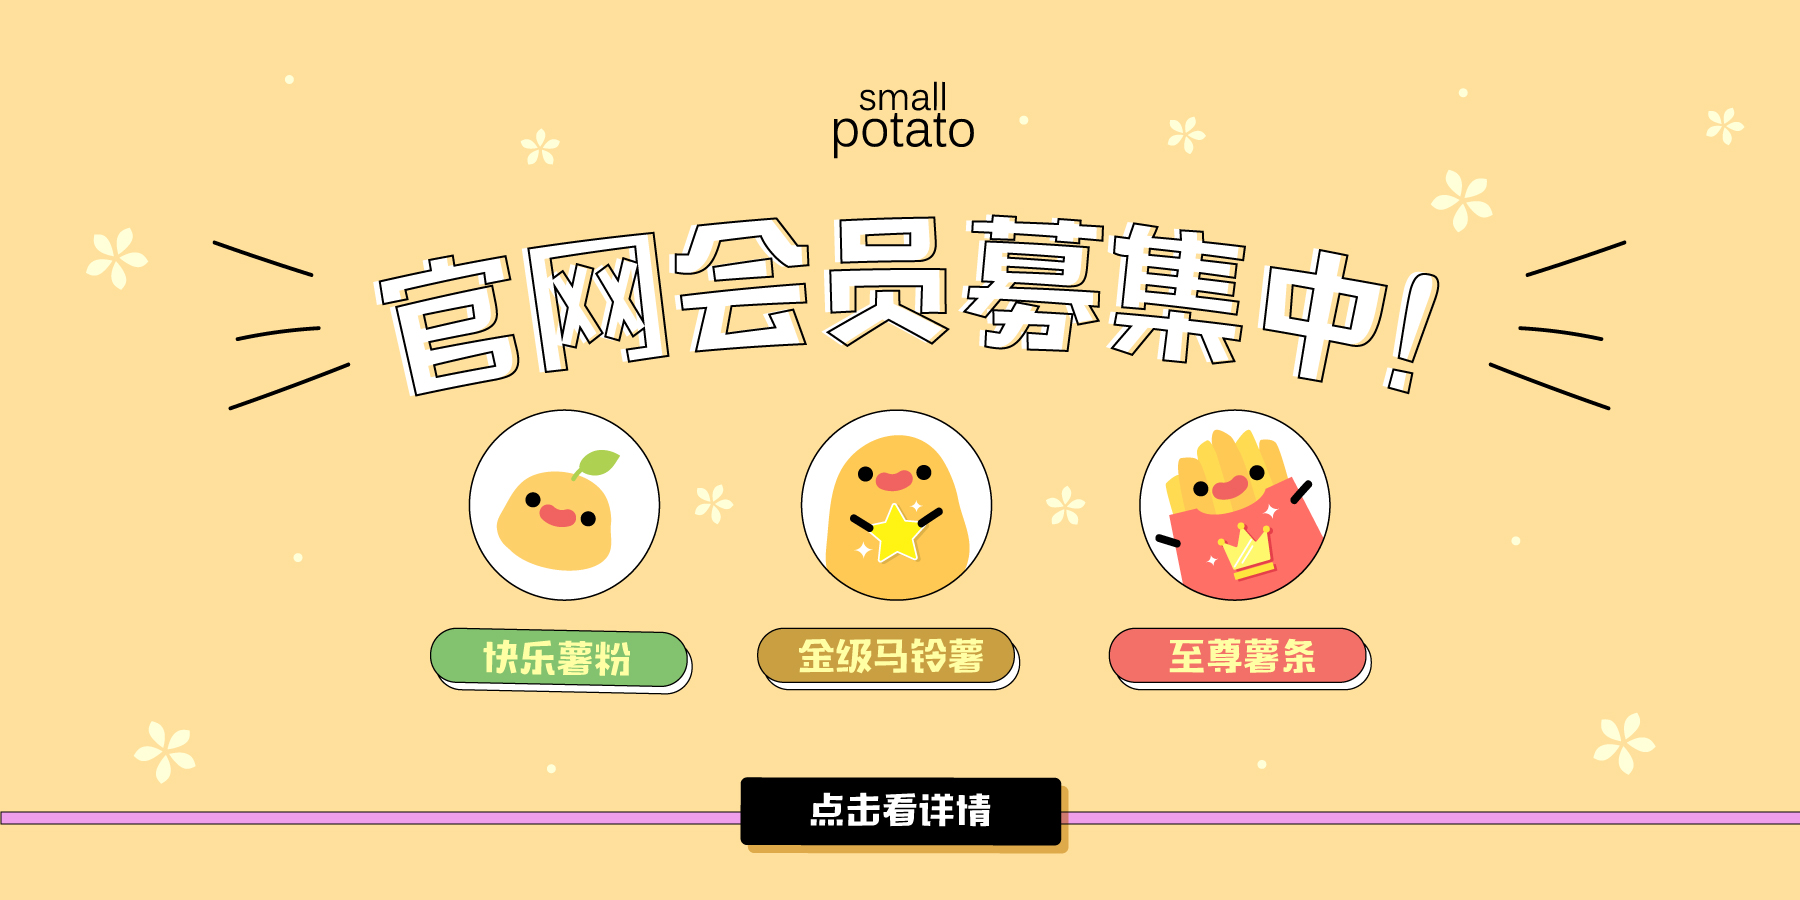  | small potato